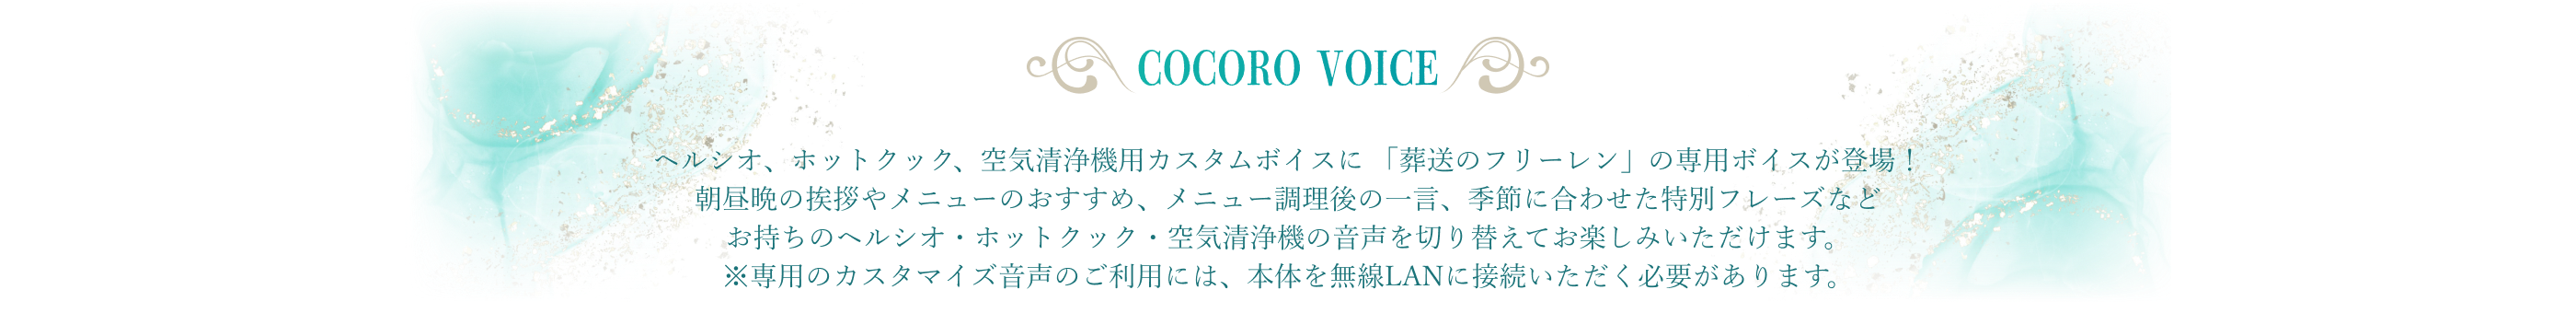 img_title_cocoro-voice